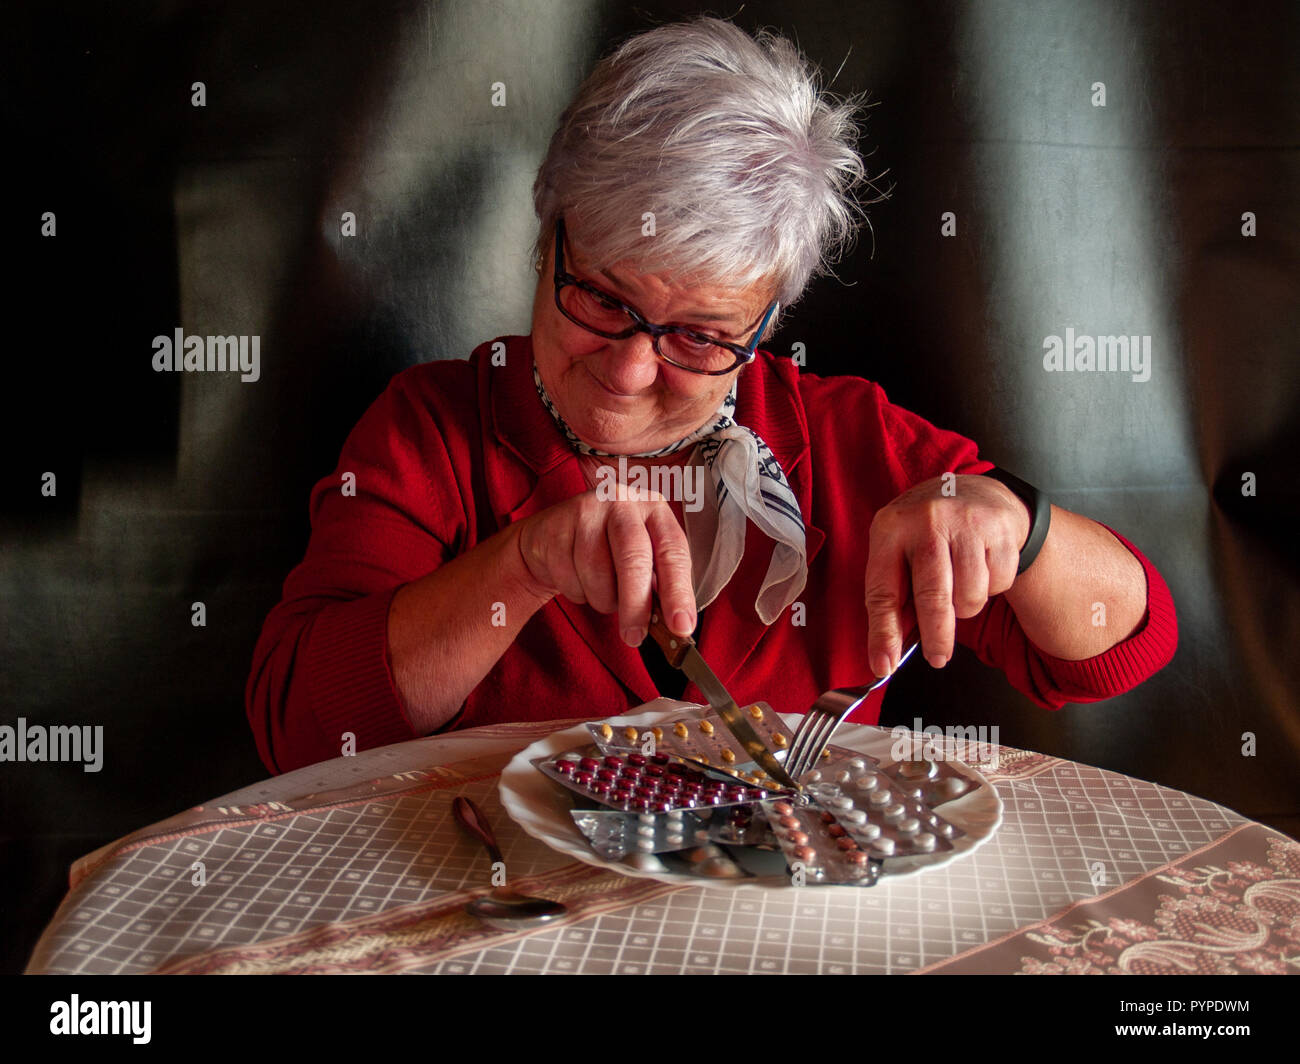 Concetto di medicina e sanità. Una donna senior il taglio di più compresse di pillole per mangiare sulla sua piastra Foto Stock